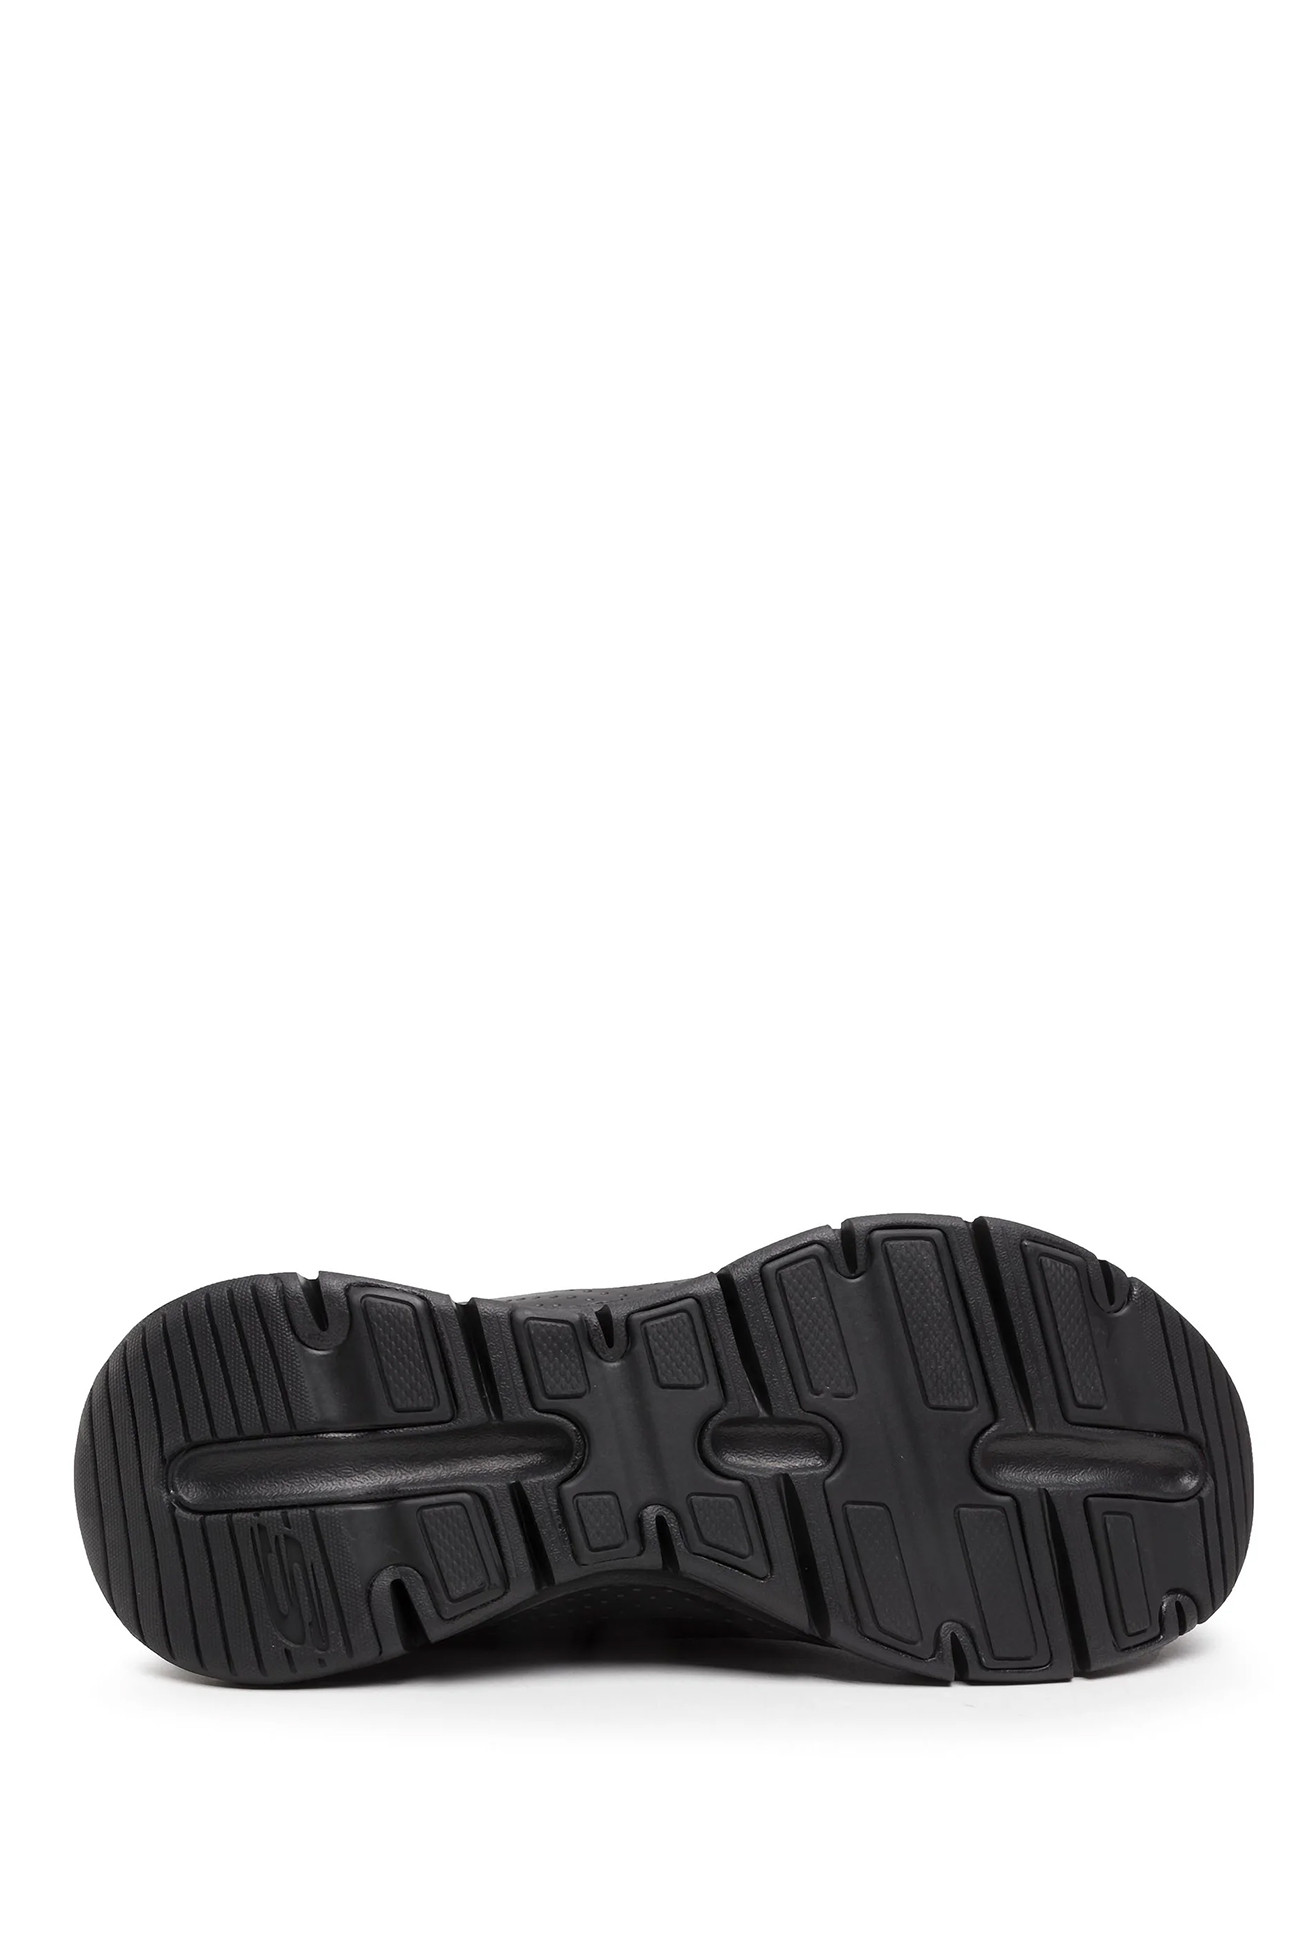 Кроссовки женские Skechers Arch Fit - Sunny Outlook черные 149057 BBK изображение 4